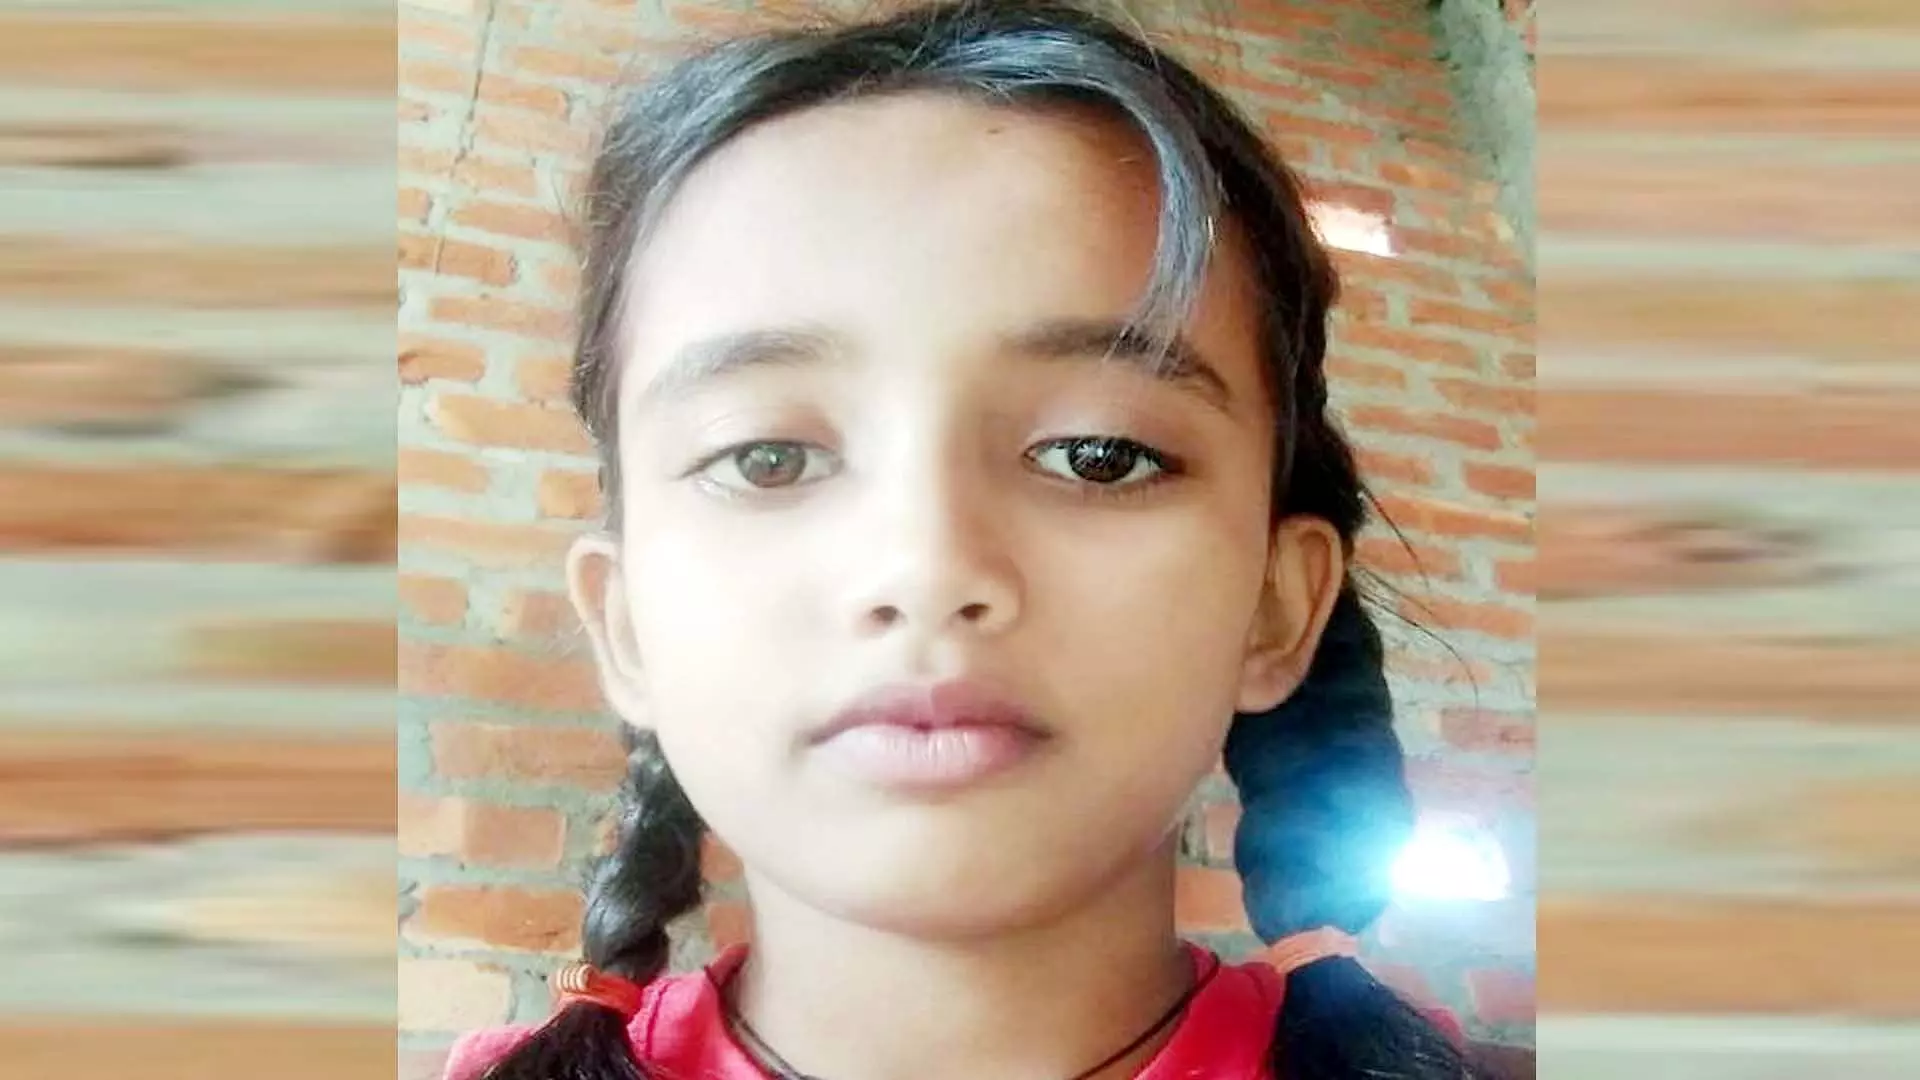 Hardoi : पांचवीं की छात्रा ने मोबाइल न देने पर फंदा लगाकर दी जान